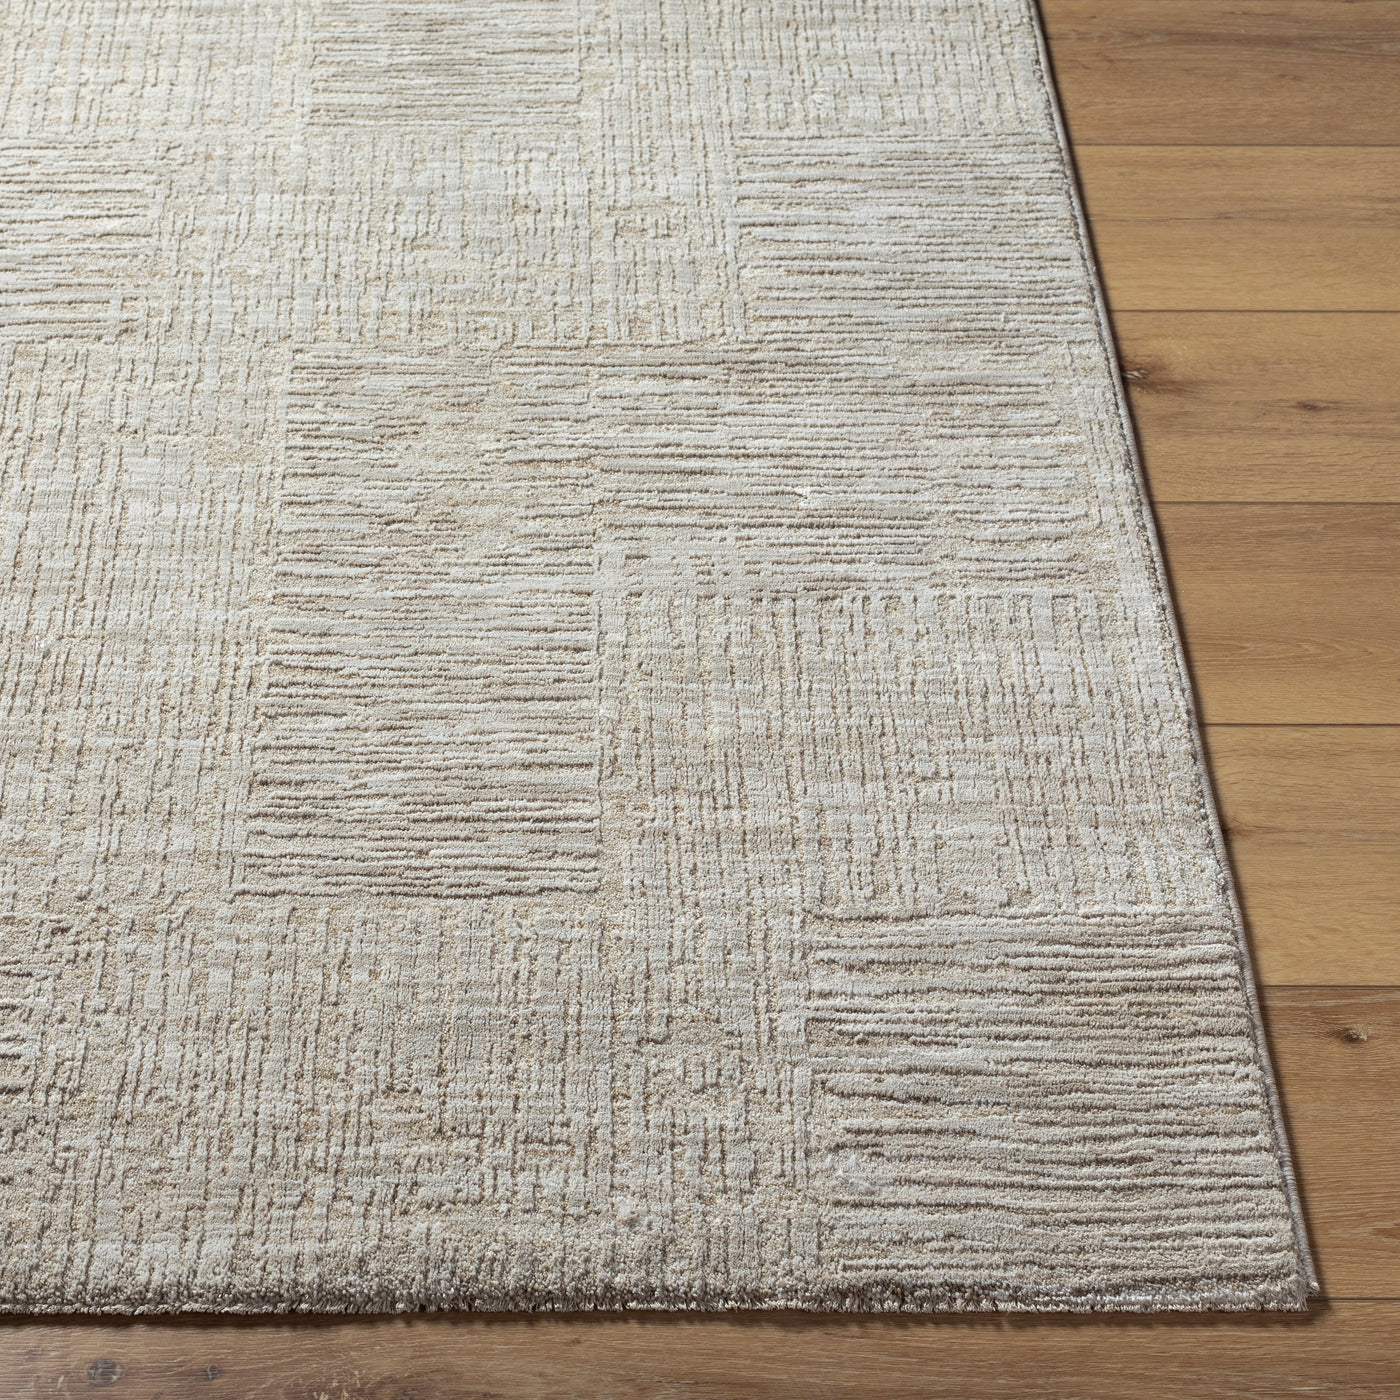 Masterpiece Floor Mat, 18x30 | Welcome Stones